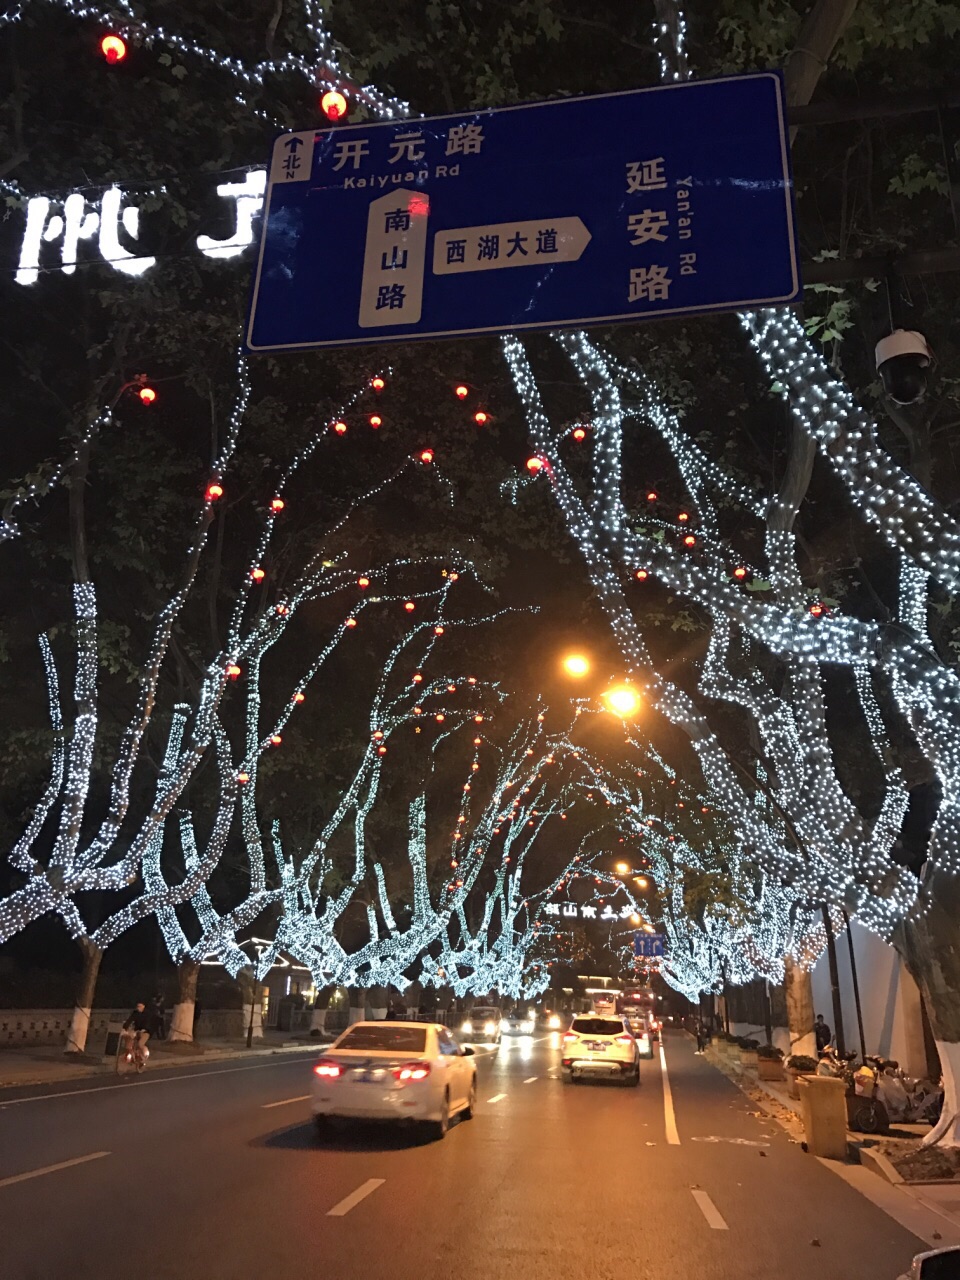 杭州南山路夜景图片图片